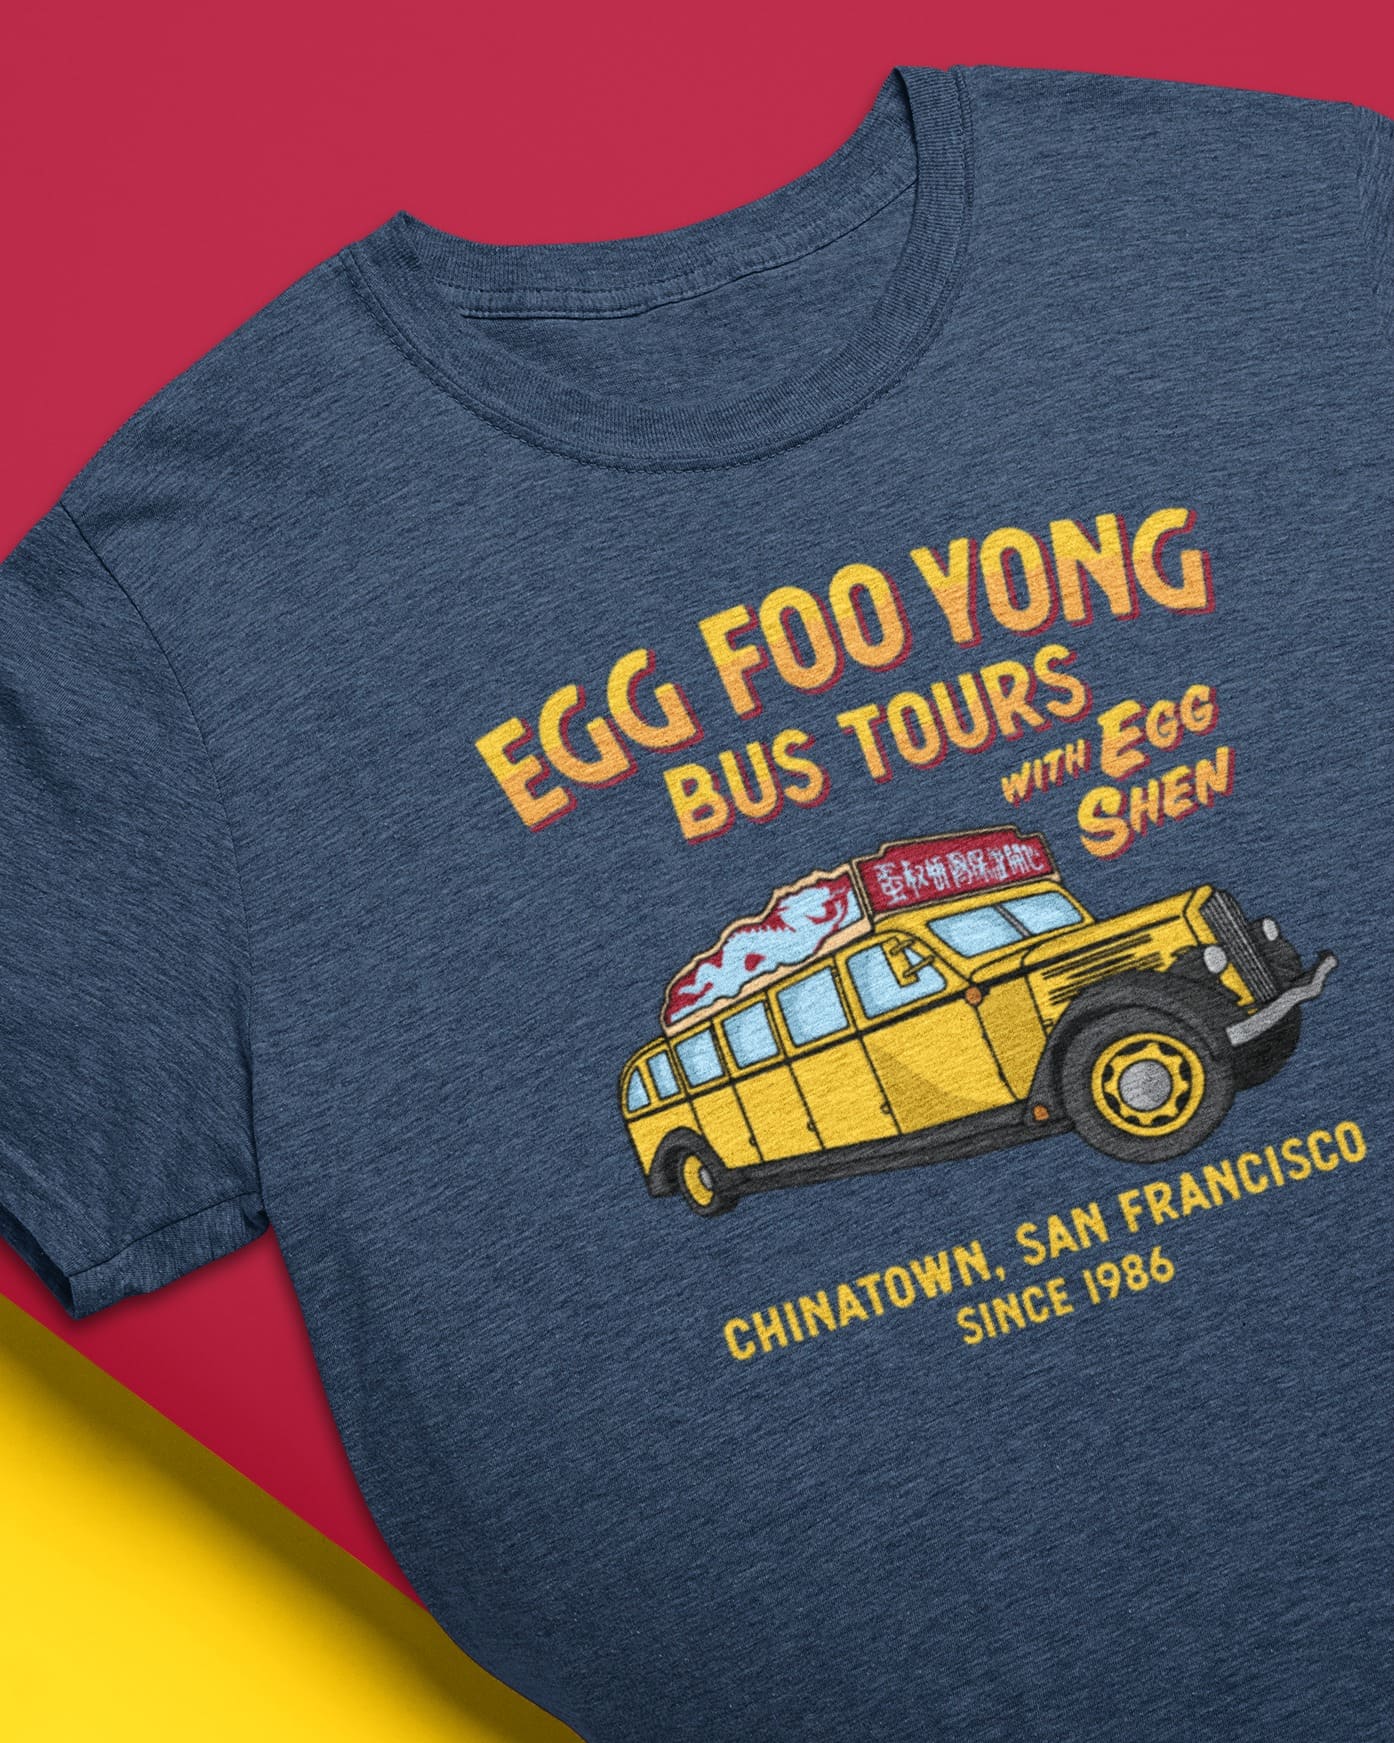 Egg foo yong bus tours - Egg shen, Chinatown San Fracisco